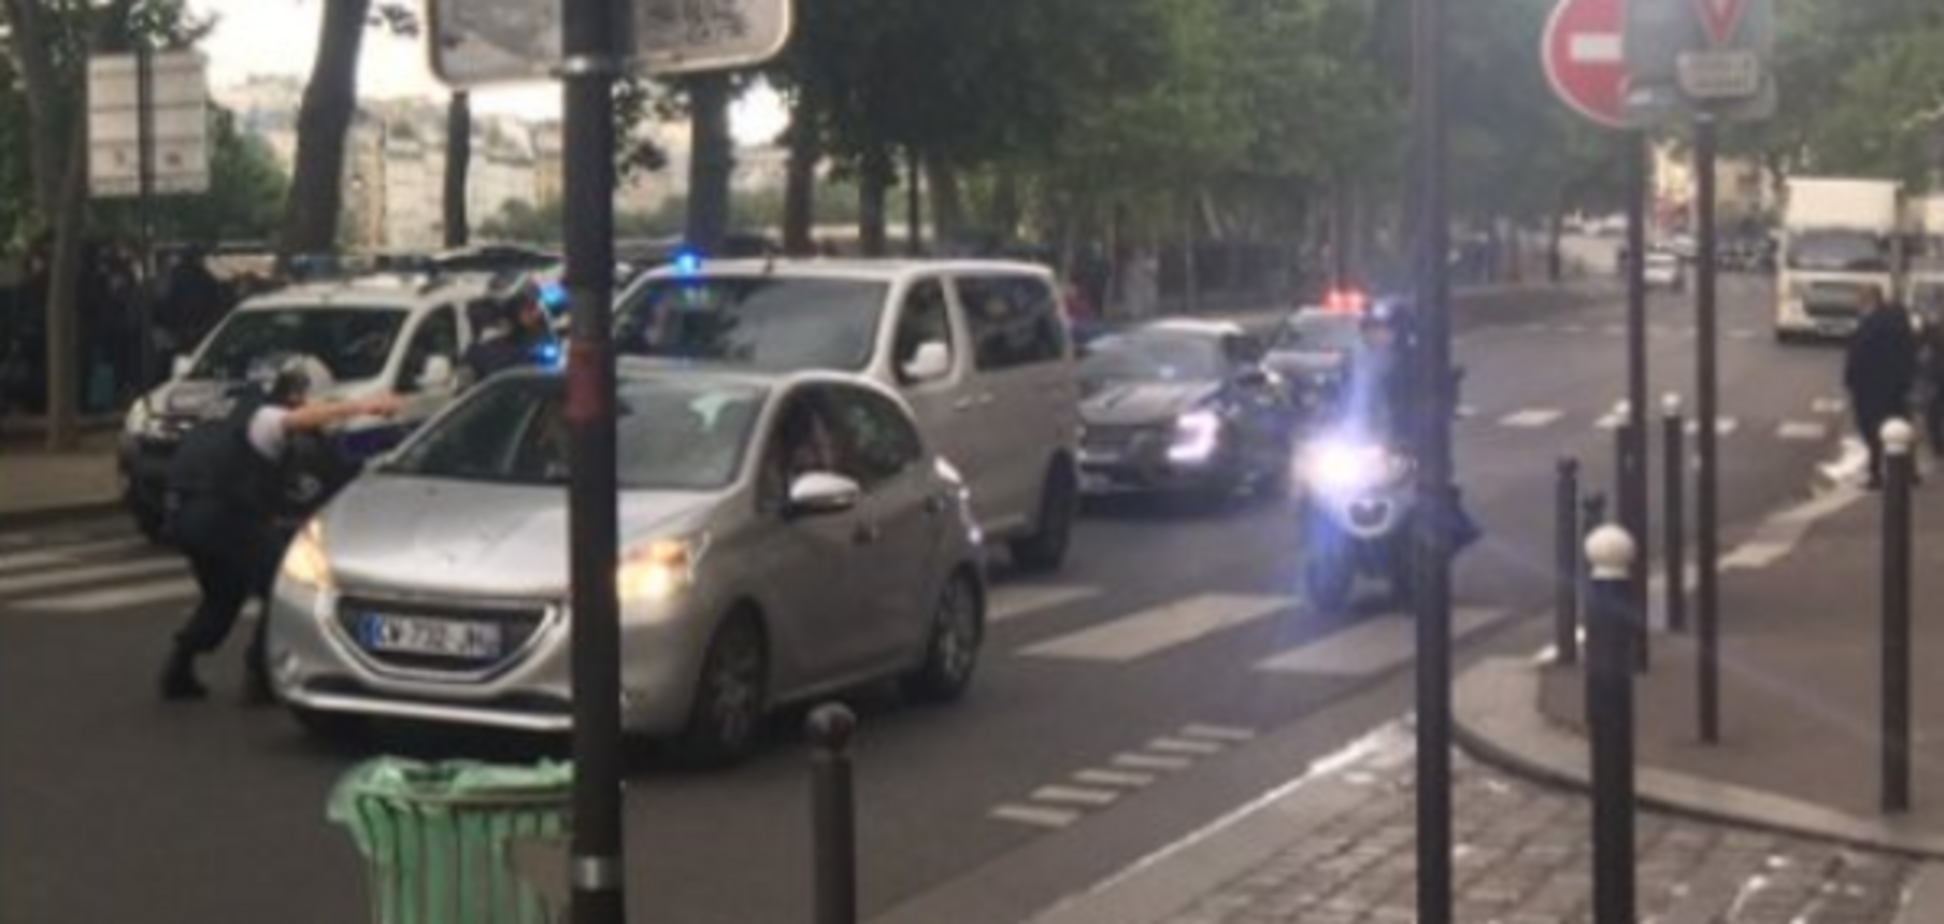 Теракт во Франции